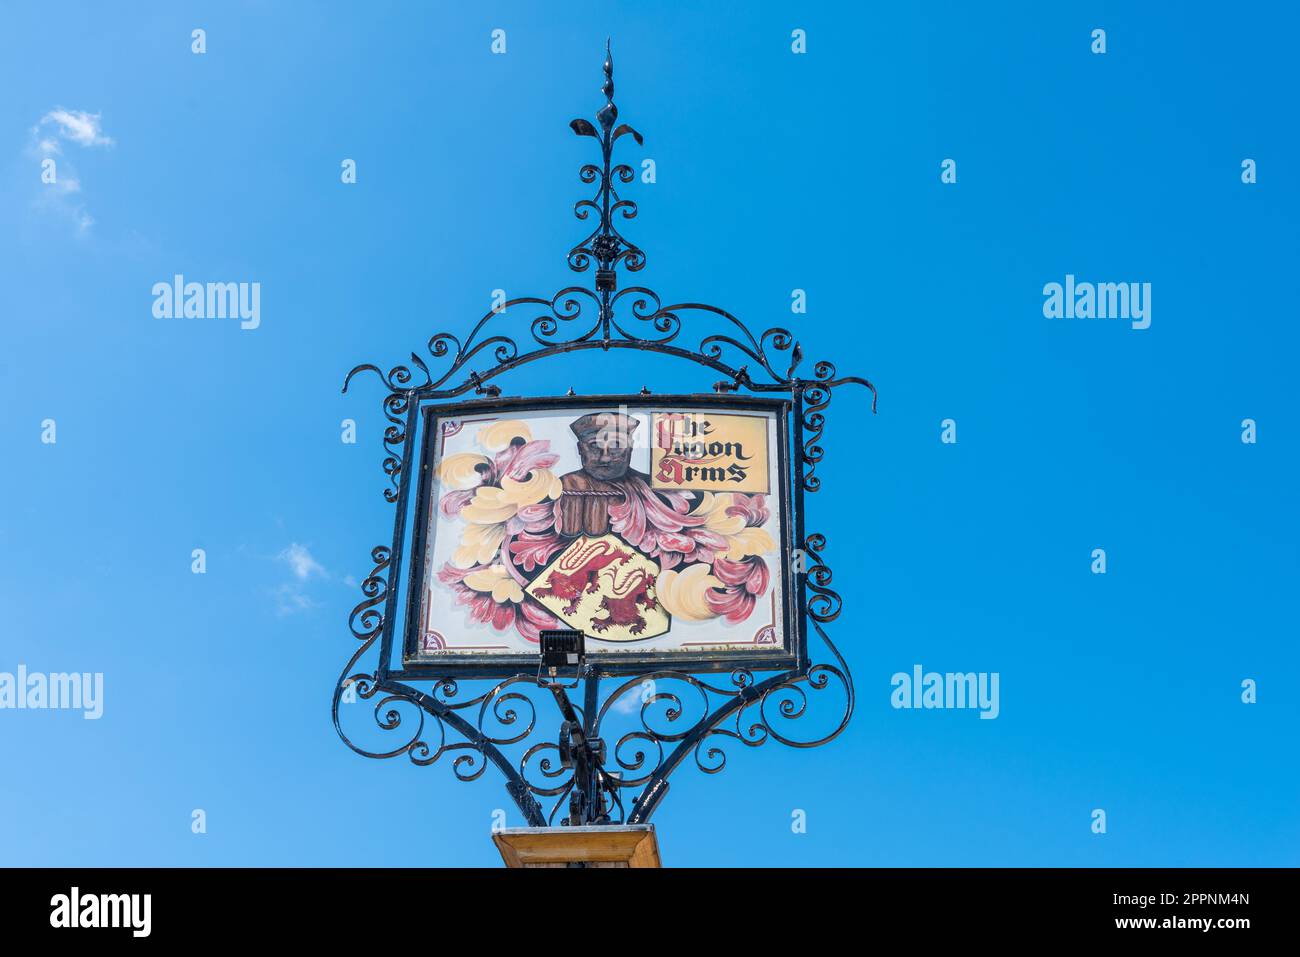 Panneau décoratif pour le Lygon Arms Hotel dans le joli village de Cotswold de Broadway à Worcestershire, Angleterre, Royaume-Uni Banque D'Images